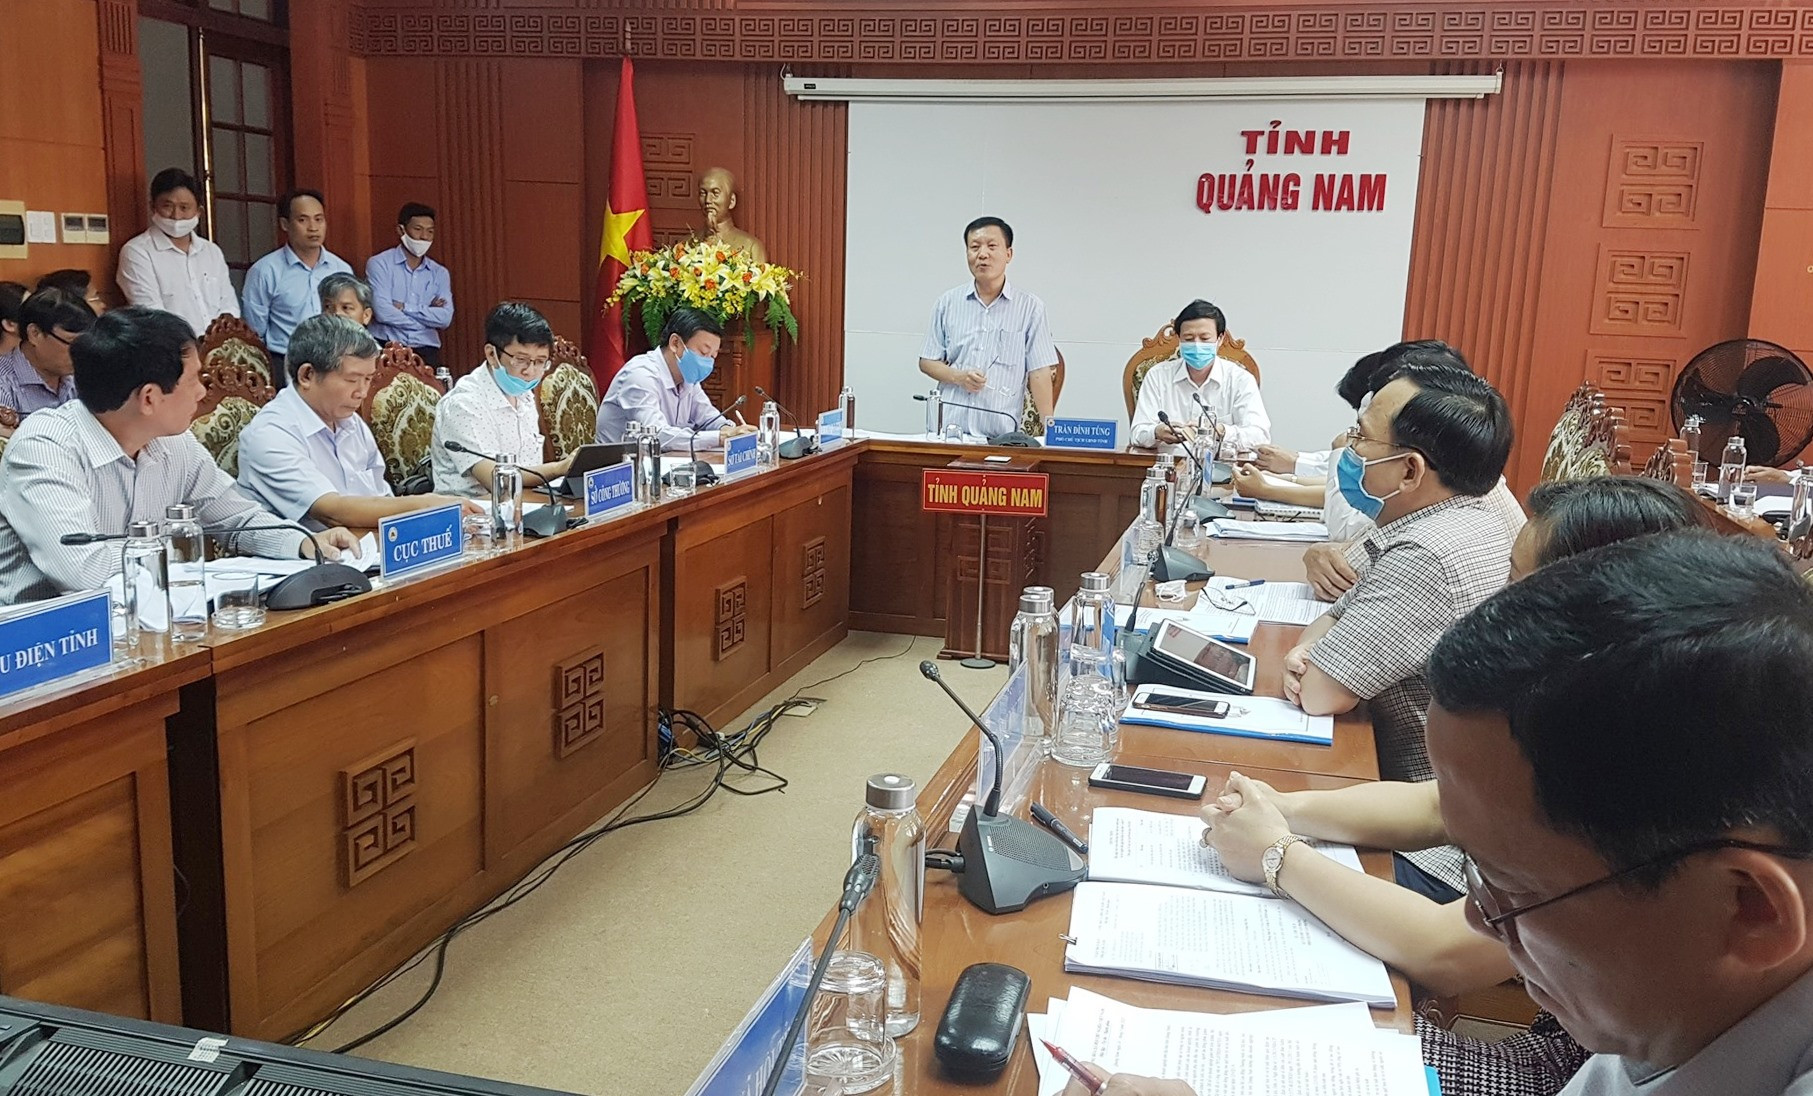 Cuộc họp triển khai thực hiện Nghị quyết 42 do Phó chủ tịch UBND tỉnh Trần Đình Tùng chủ trì vào sáng ngày 29.4. Ảnh: D.L